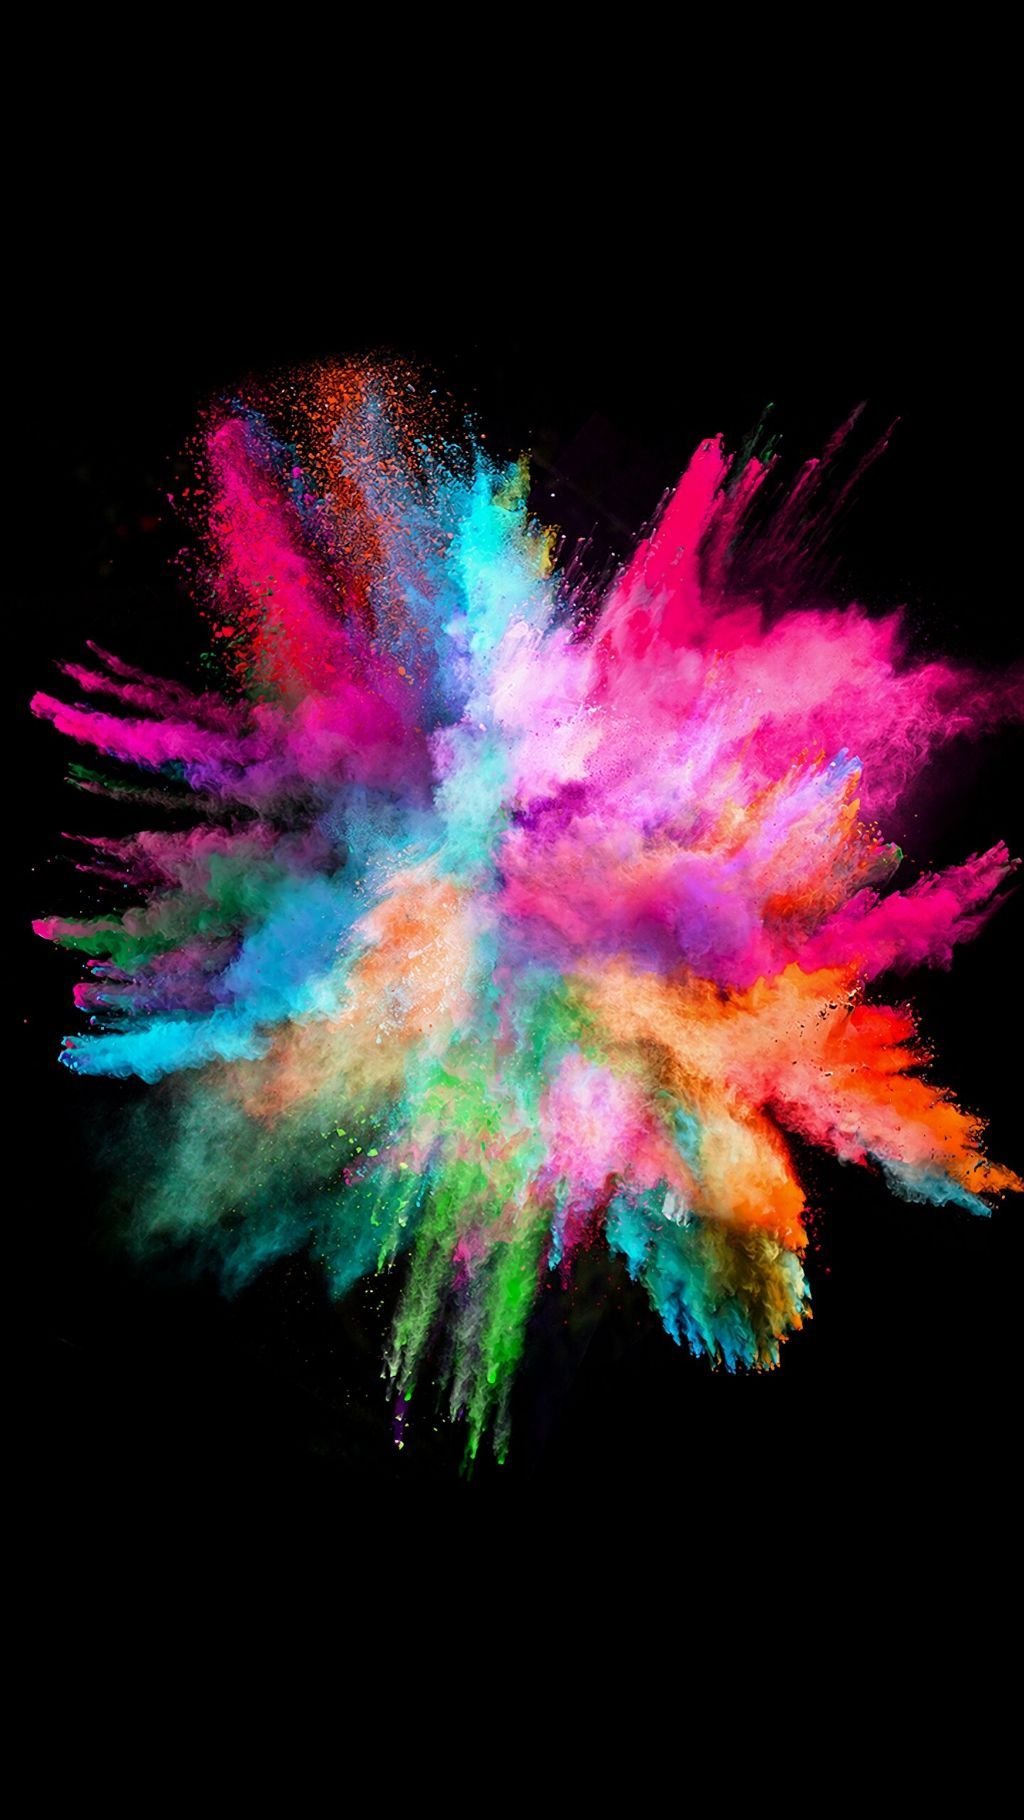 800+ Free Color Splash & Splash Images - Pixabay